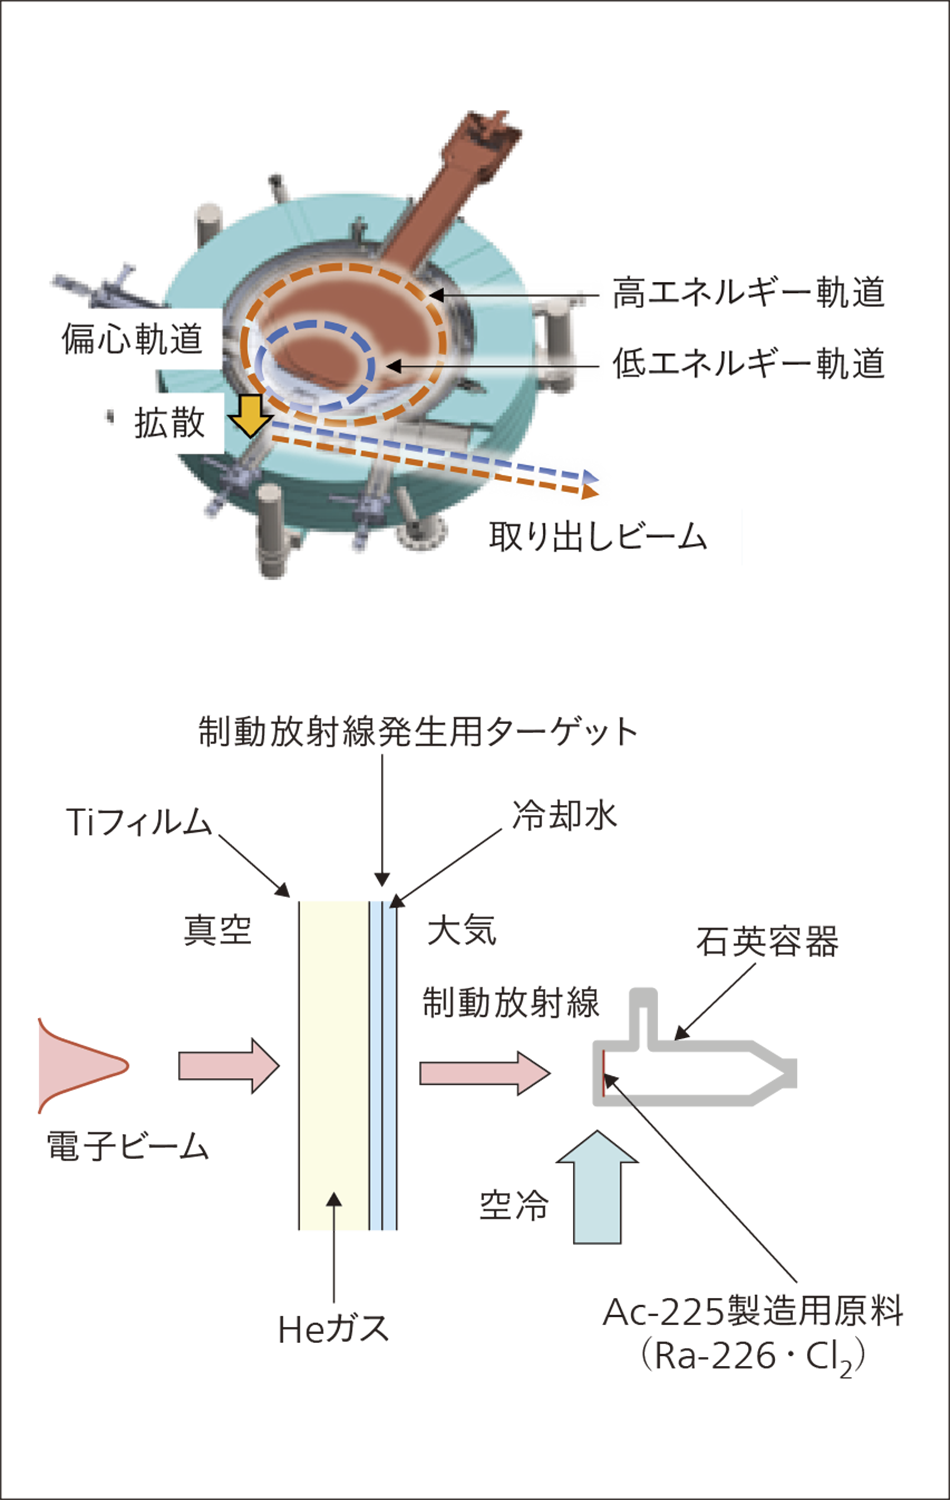 ［06］粒子線治療用の新型加速器の模式図（上）とMBqオーダー製造実証試験体系（下）